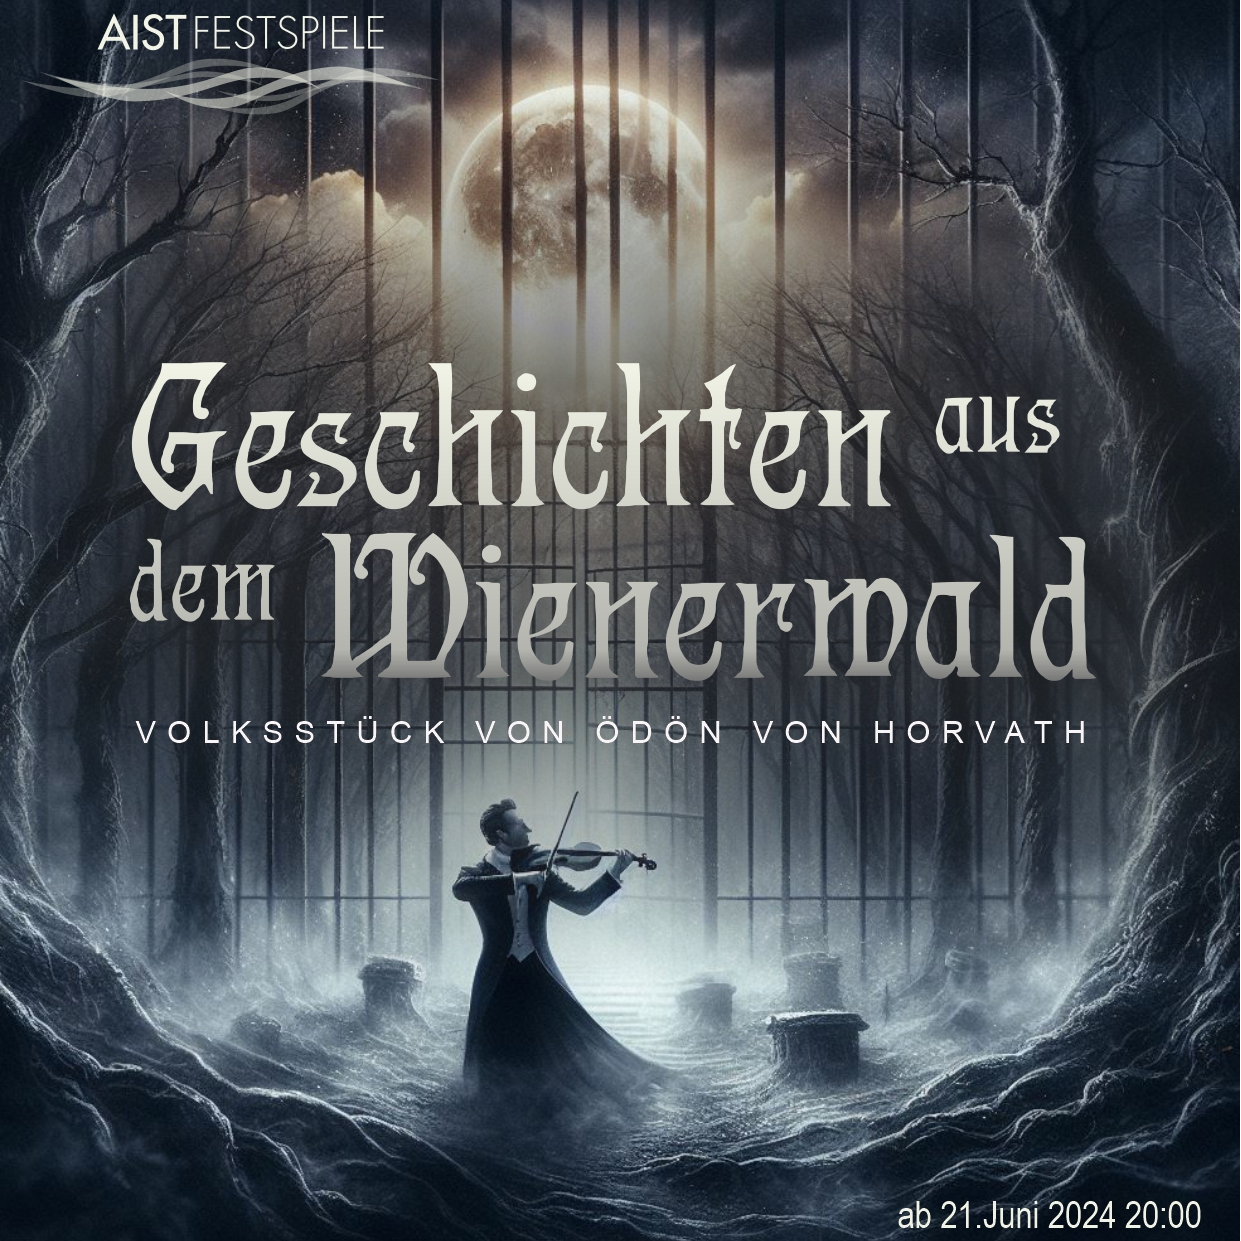 AISTFESTSPIELE 2024 - "Geschichten aus dem Wienerwald"